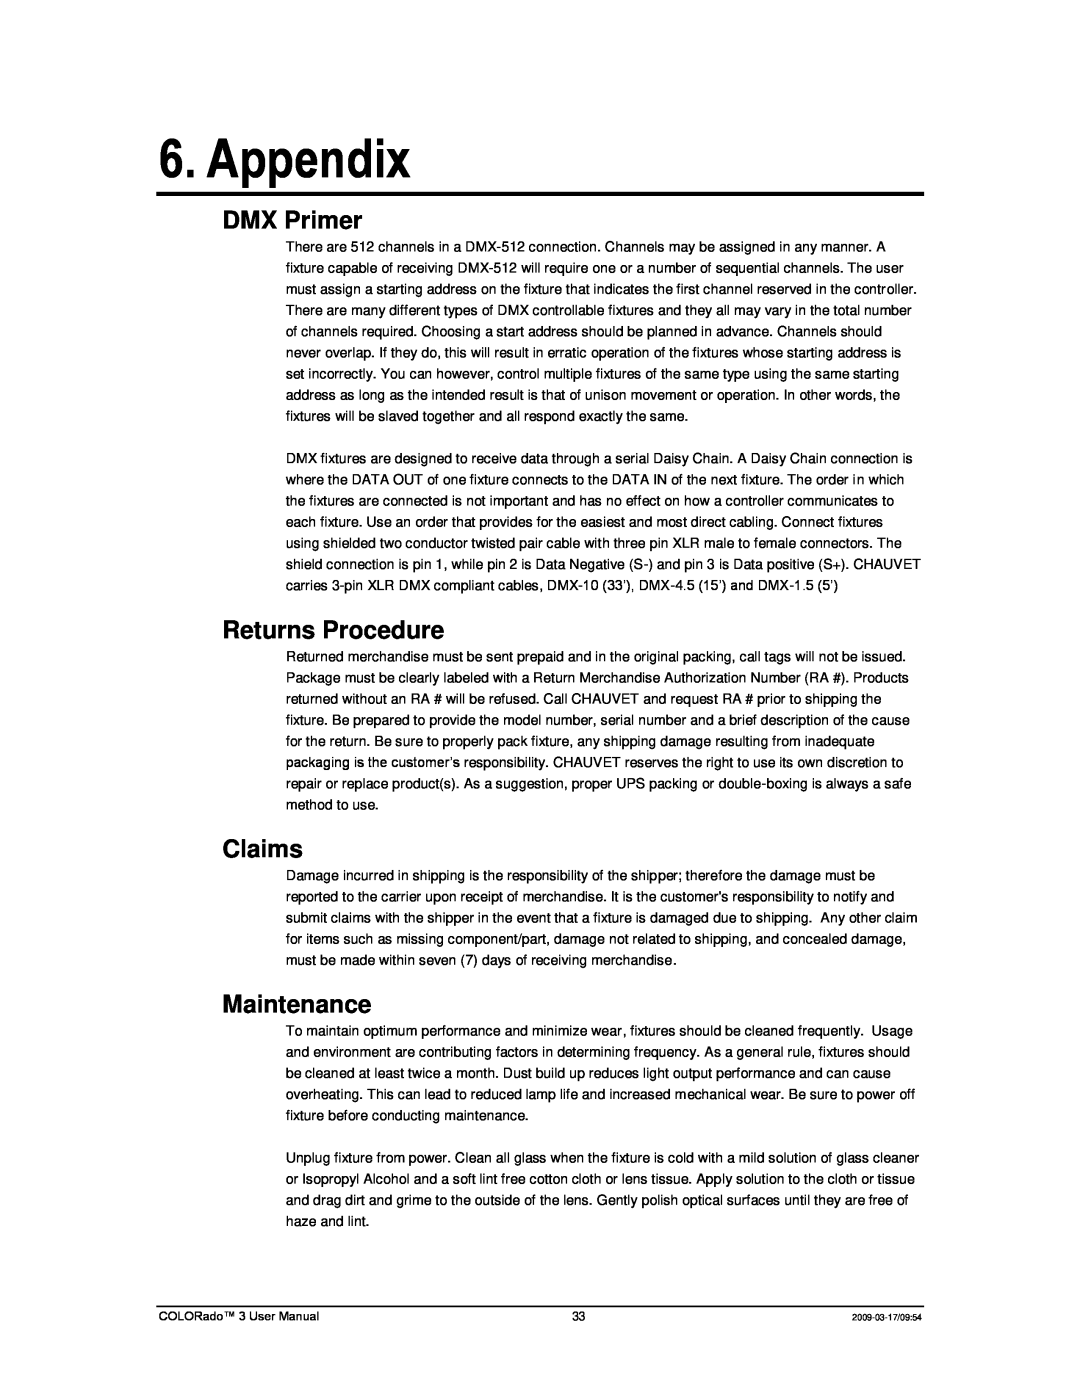 Chauvet 3P user manual Appendix, DMX Primer, Returns Procedure, Claims, Maintenance 